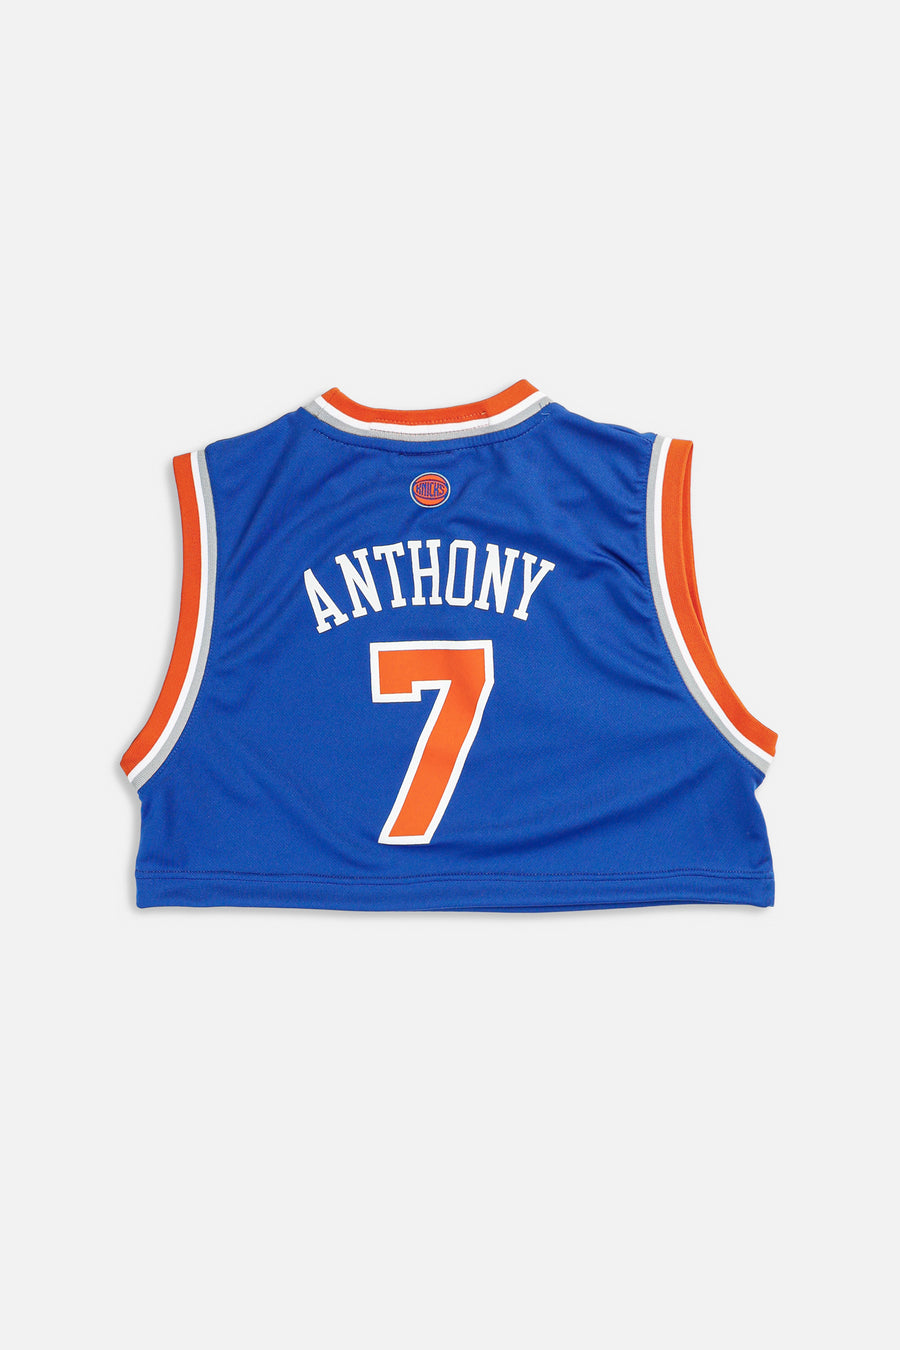 Rework New York Knicks NBA Crop Jersey - XL